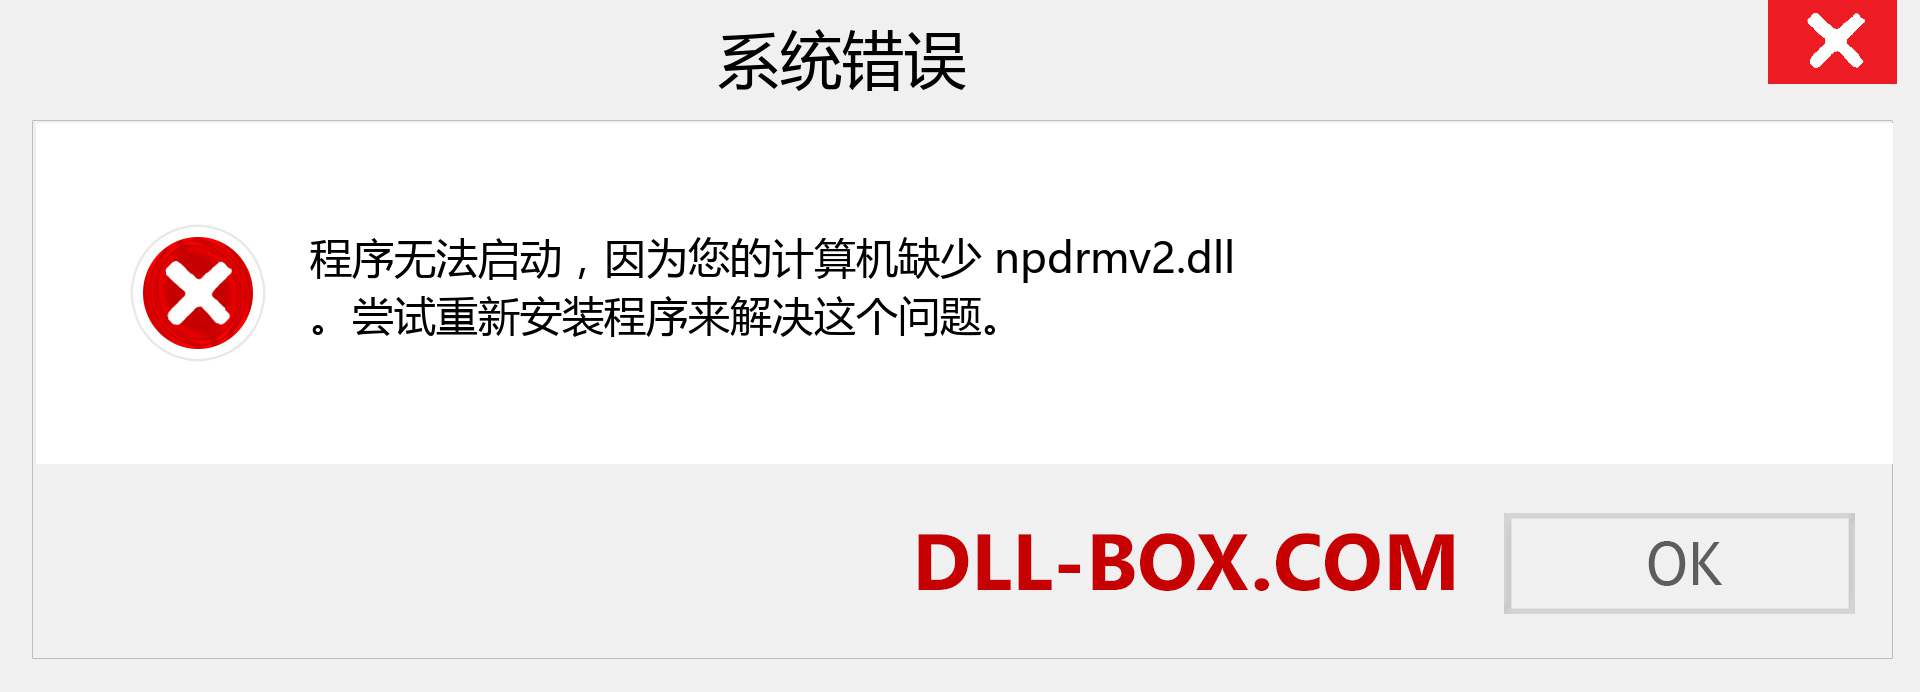 npdrmv2.dll 文件丢失？。 适用于 Windows 7、8、10 的下载 - 修复 Windows、照片、图像上的 npdrmv2 dll 丢失错误